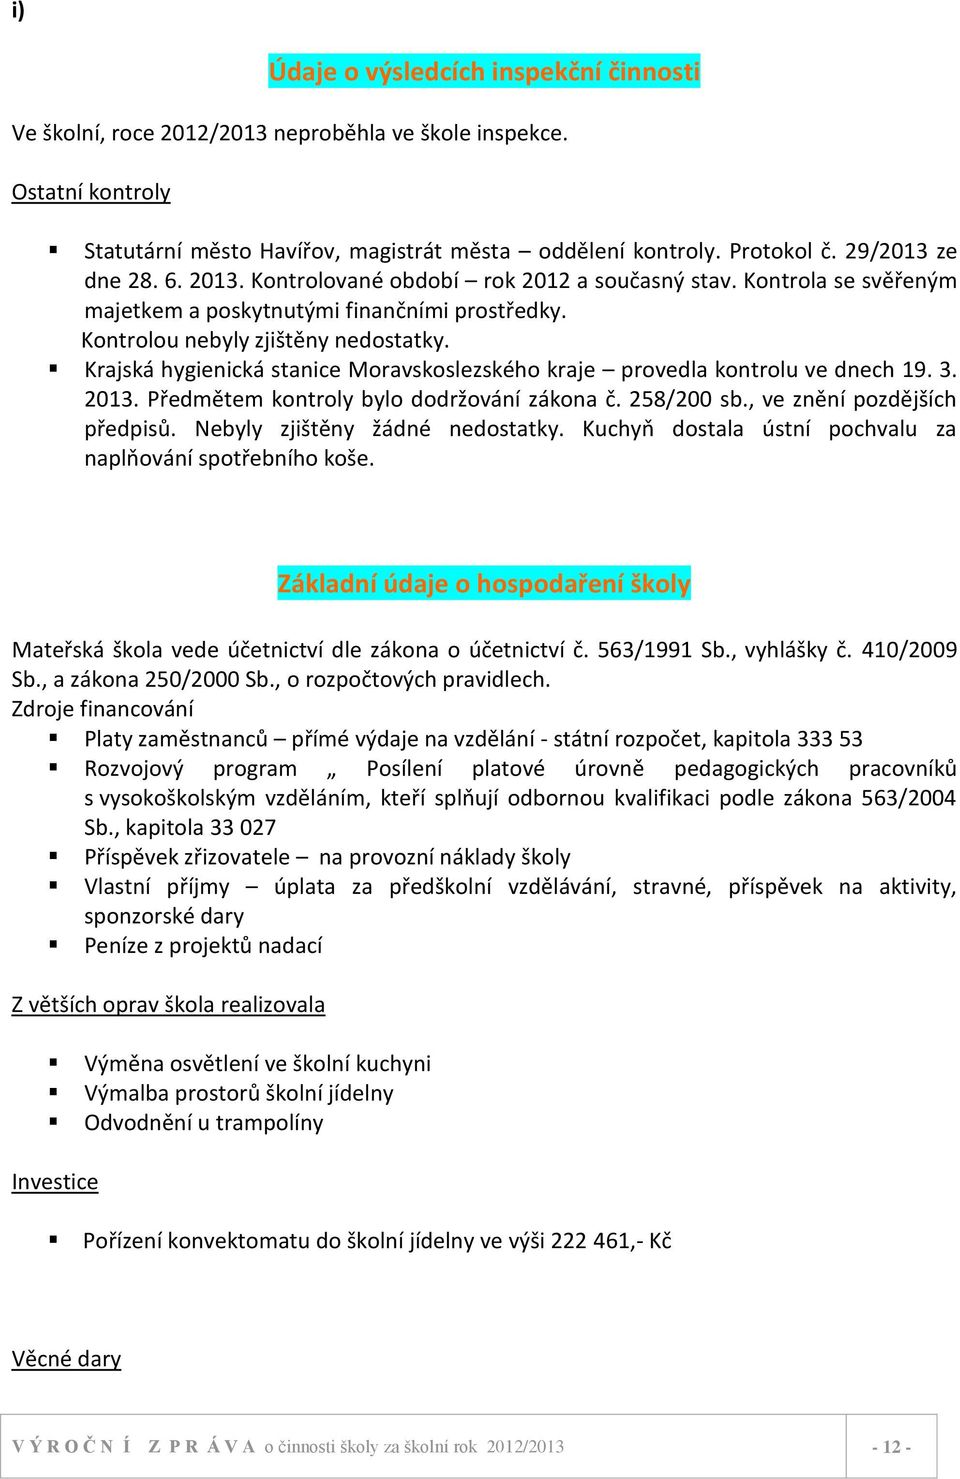 Krajská hygienická stanice Moravskoslezského kraje provedla kontrolu ve dnech 19. 3. 2013. Předmětem kontroly bylo dodržování zákona č. 258/200 sb., ve znění pozdějších předpisů.